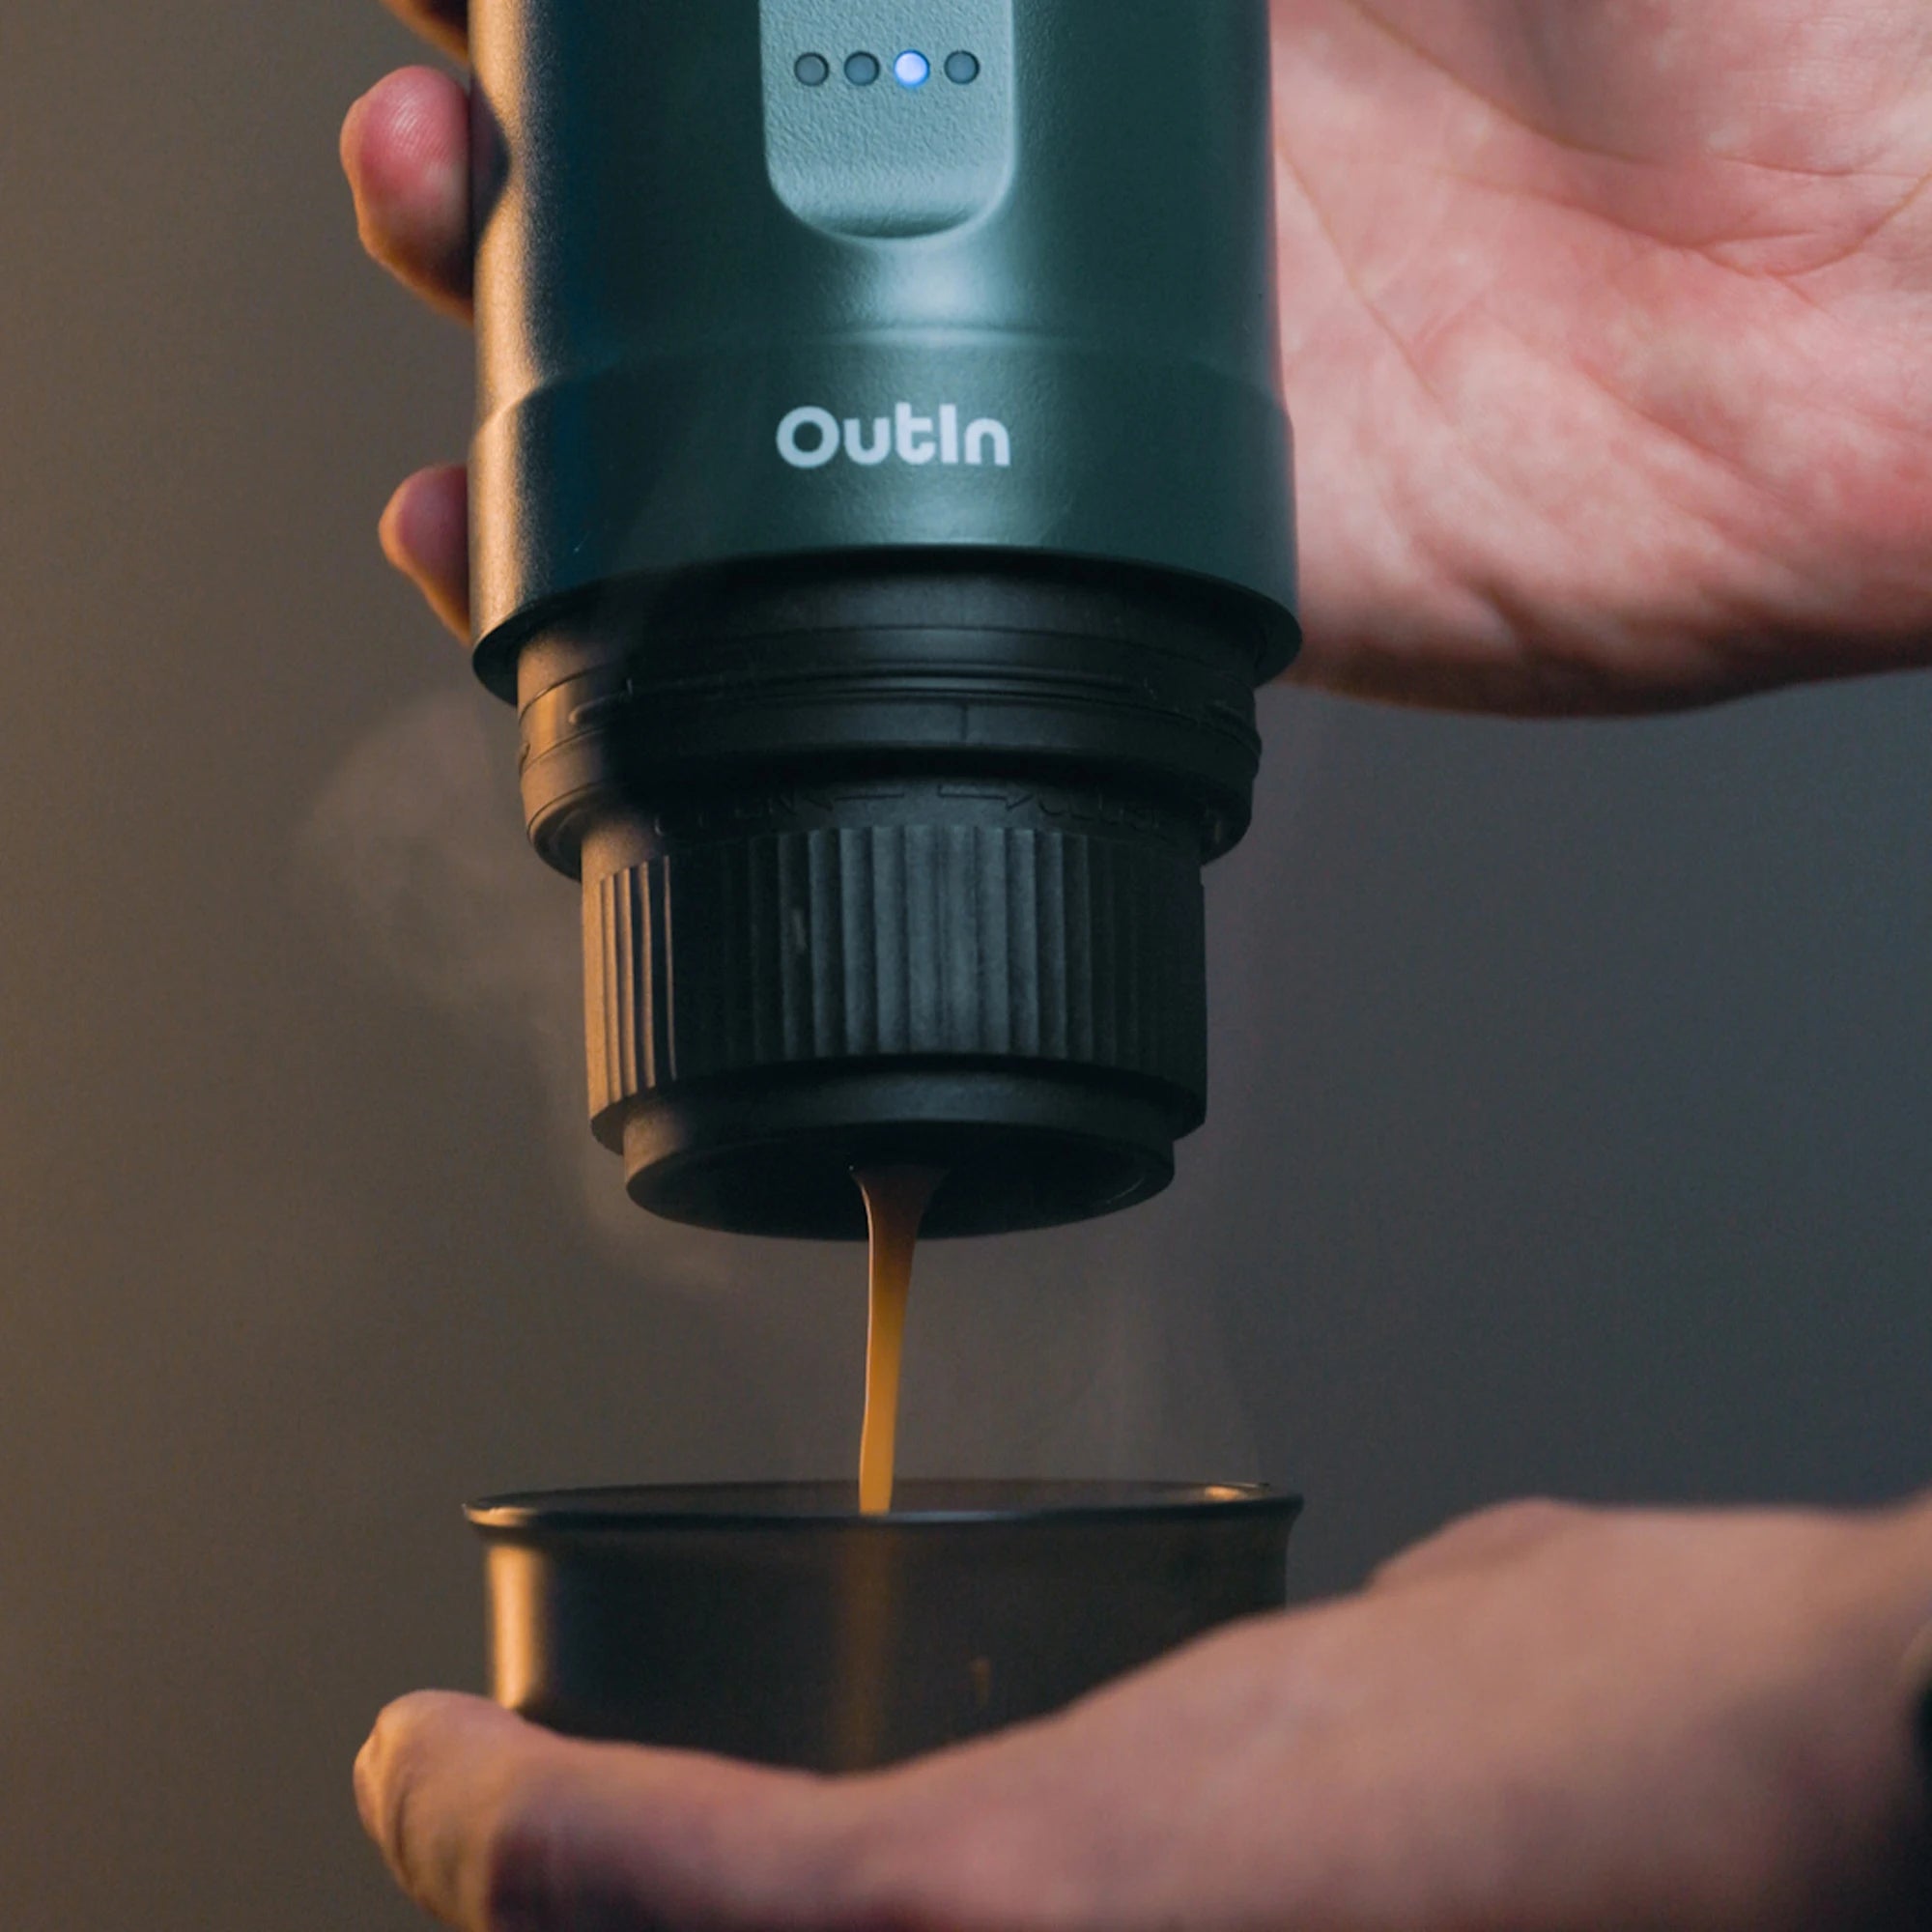 Nano máquina de café espresso portátil (Outin verde azulado)